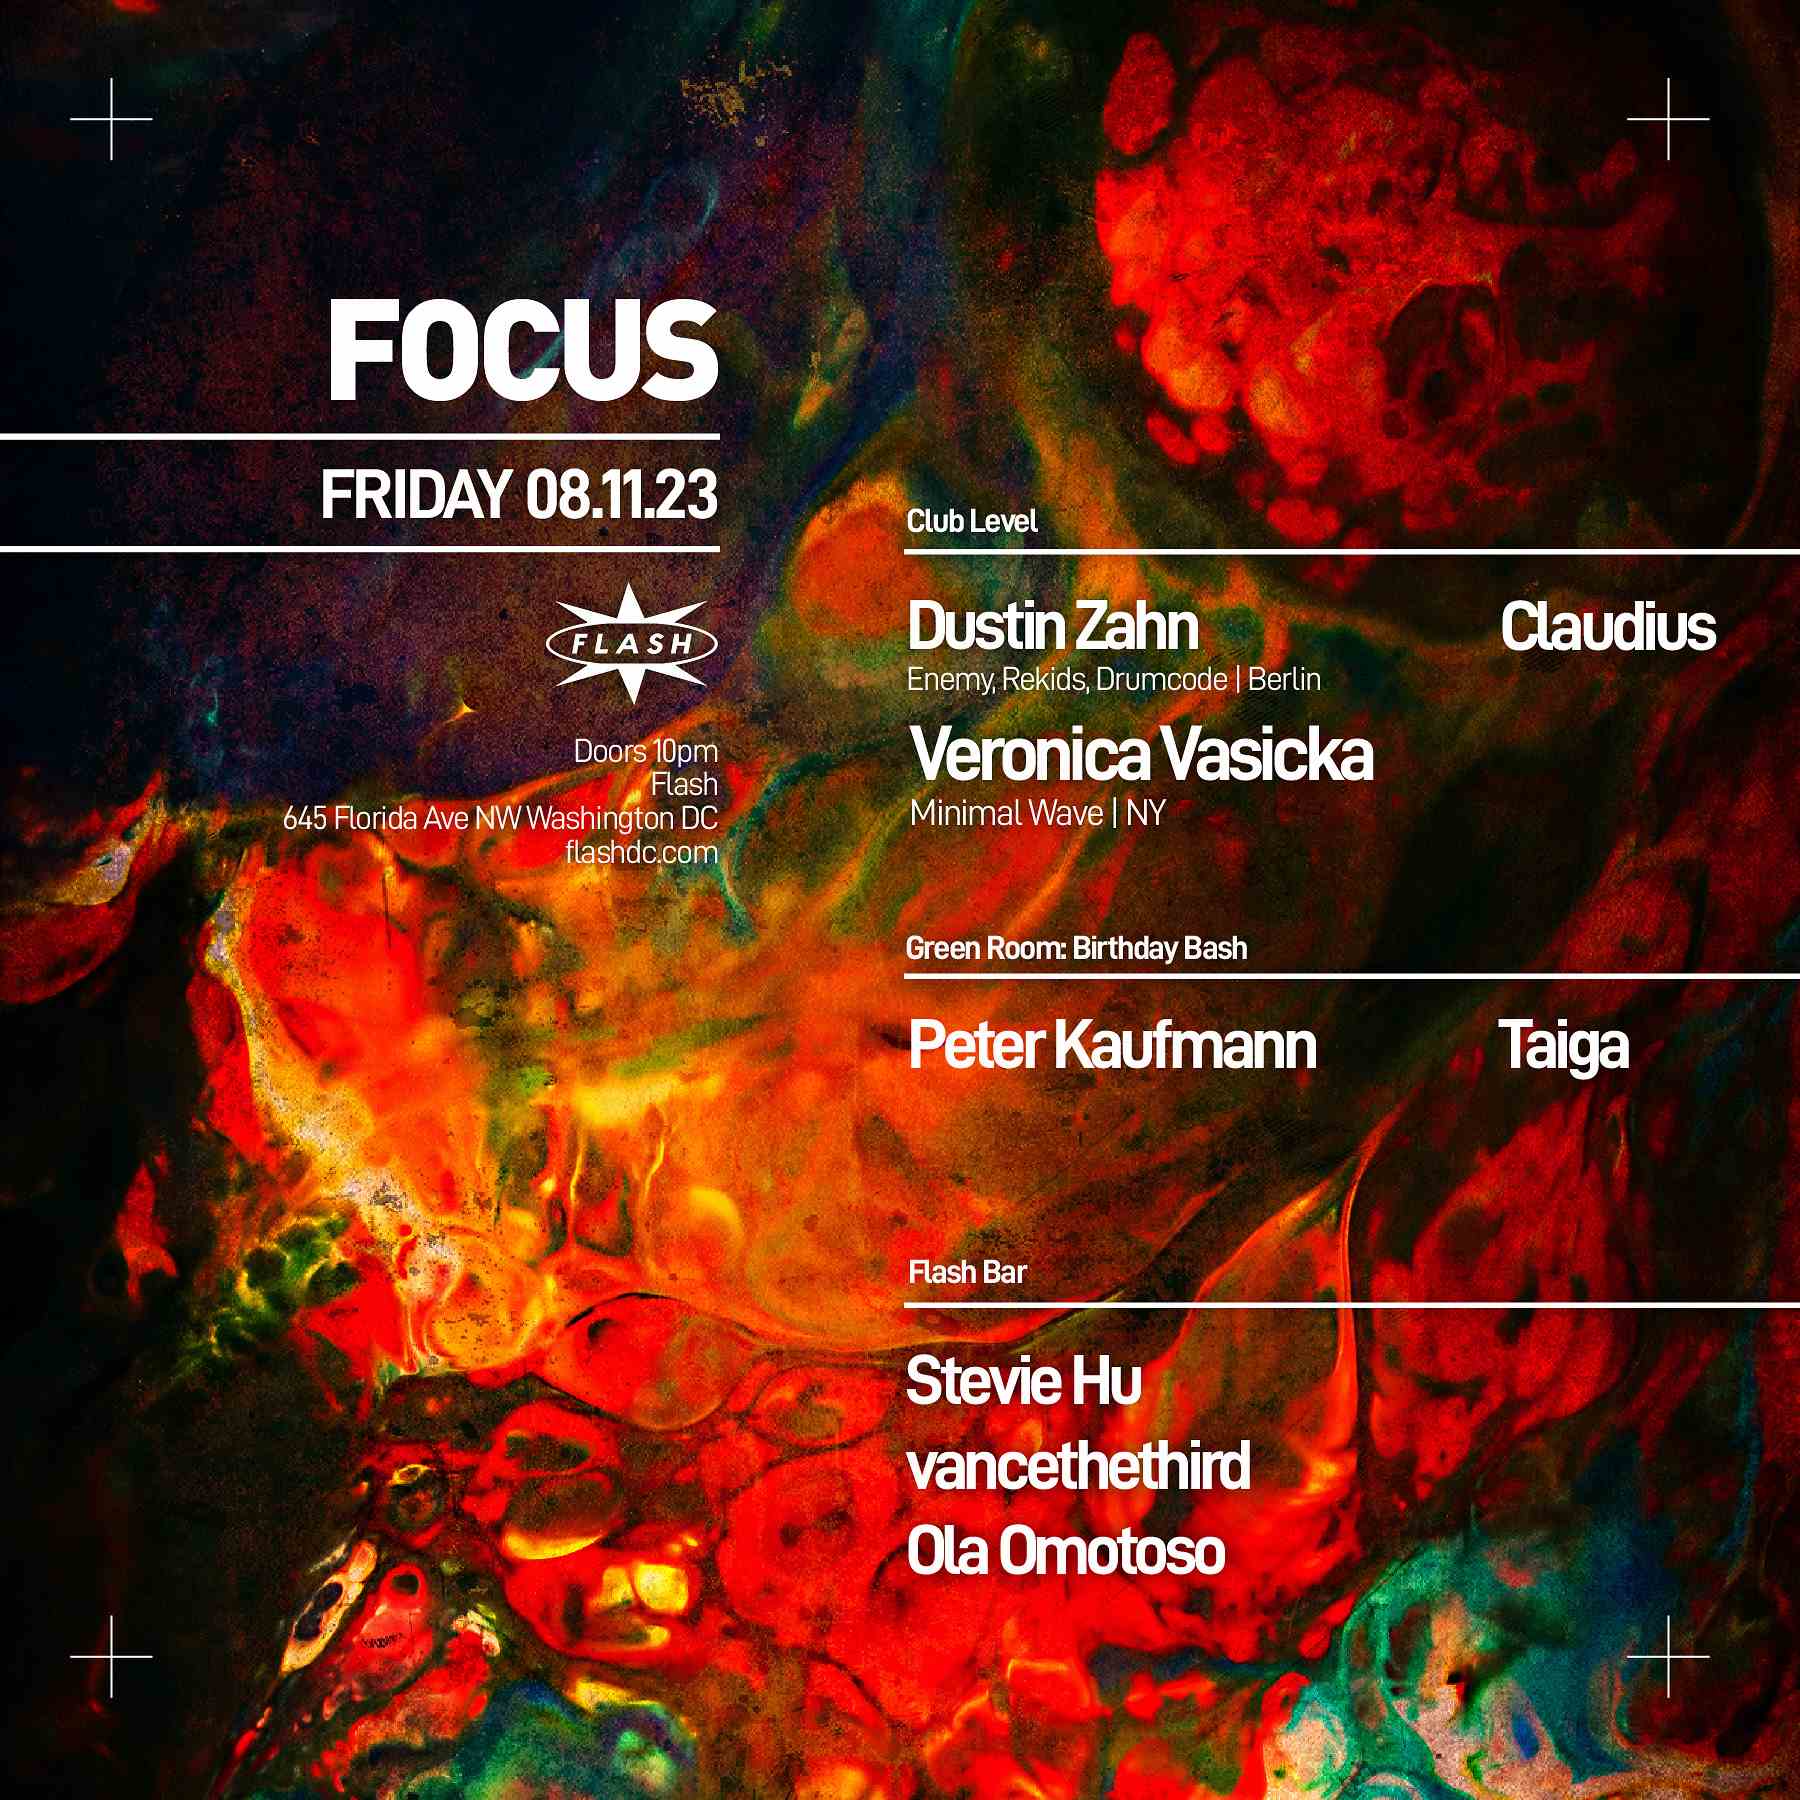 FOCUS: Dustin Zahn event flyer